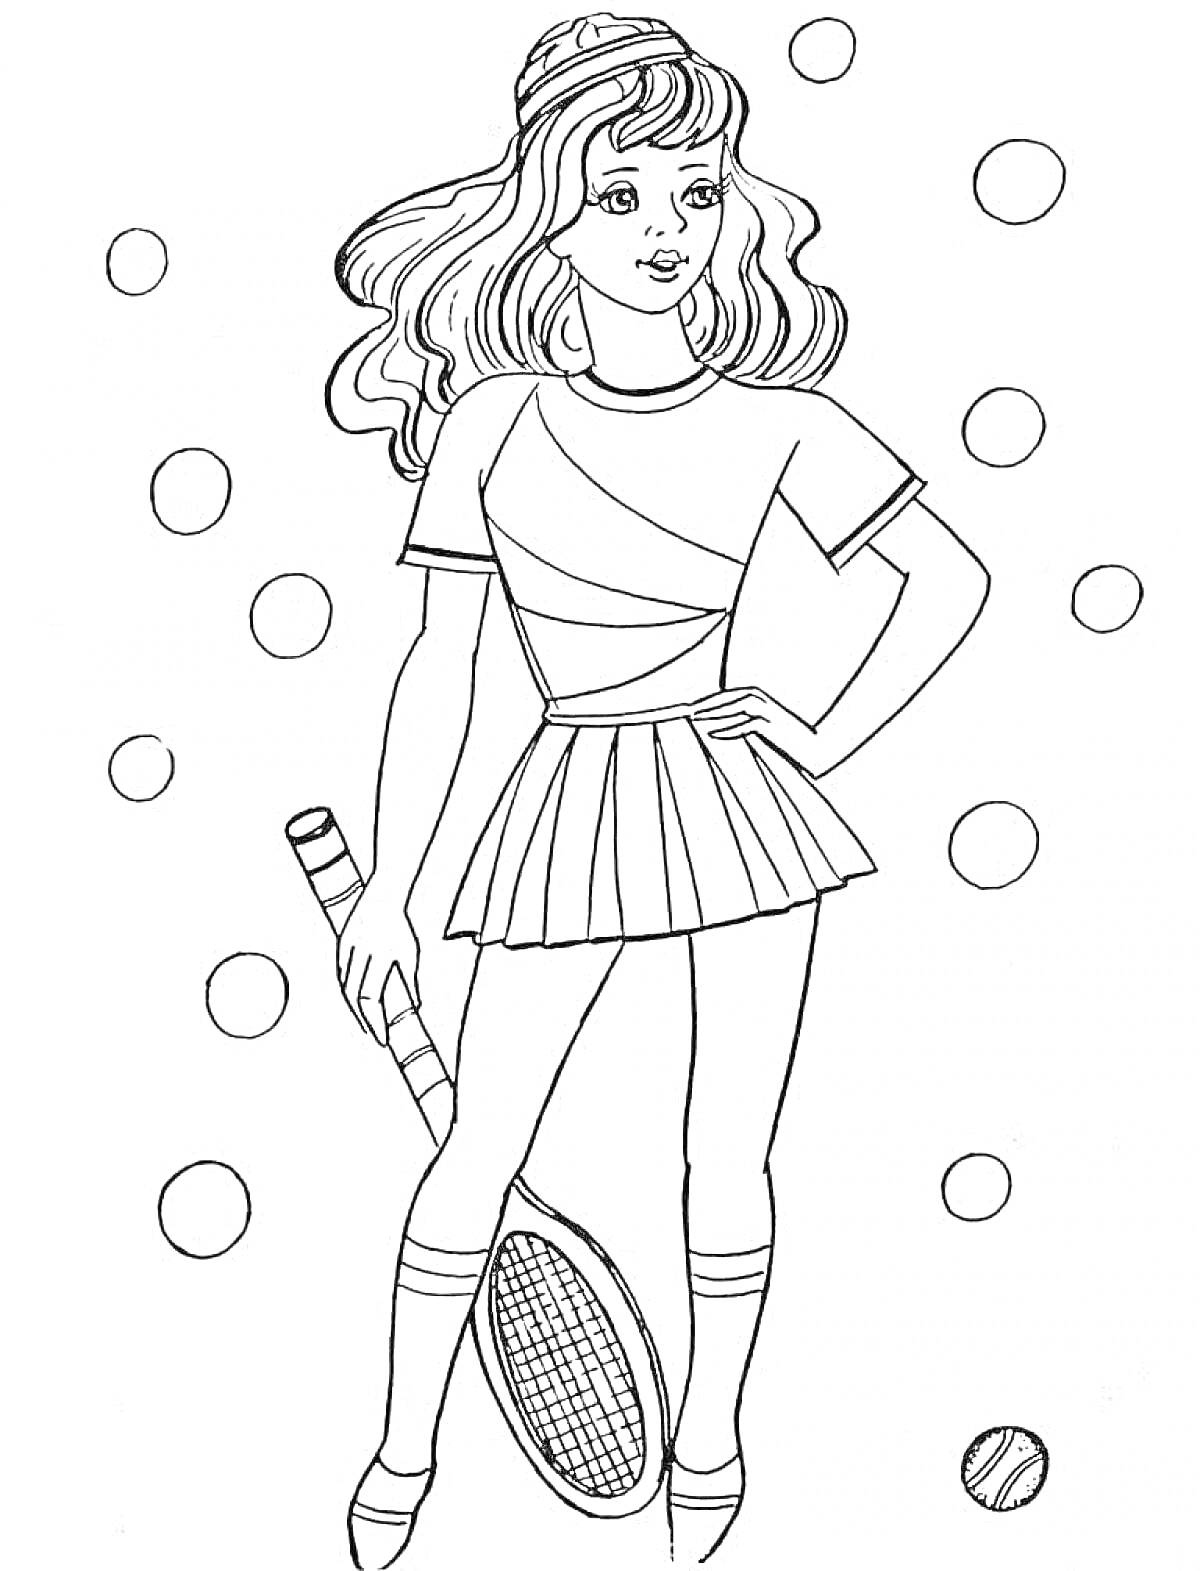 Раскраска Девочка с теннисной ракеткой и мячом, платье и корона, точки на заднем фоне